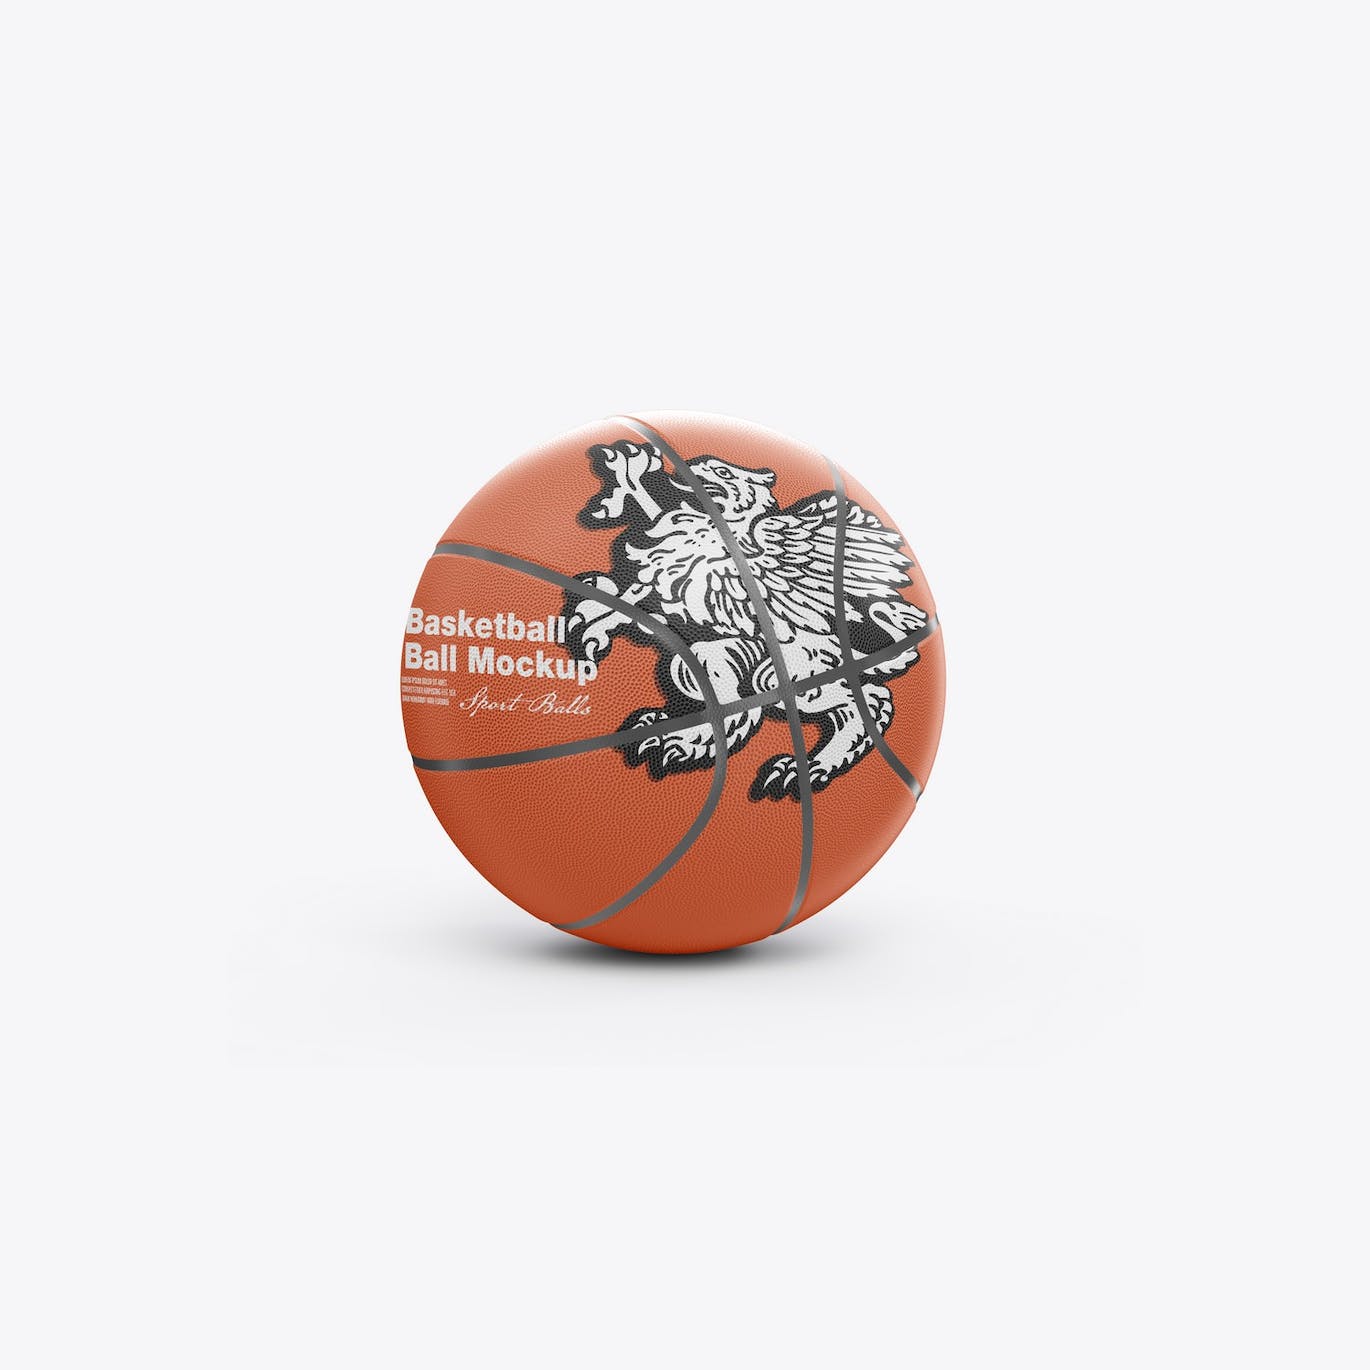 篮球运动品牌设计样机 Basketball Ball Mockup 样机素材 第2张